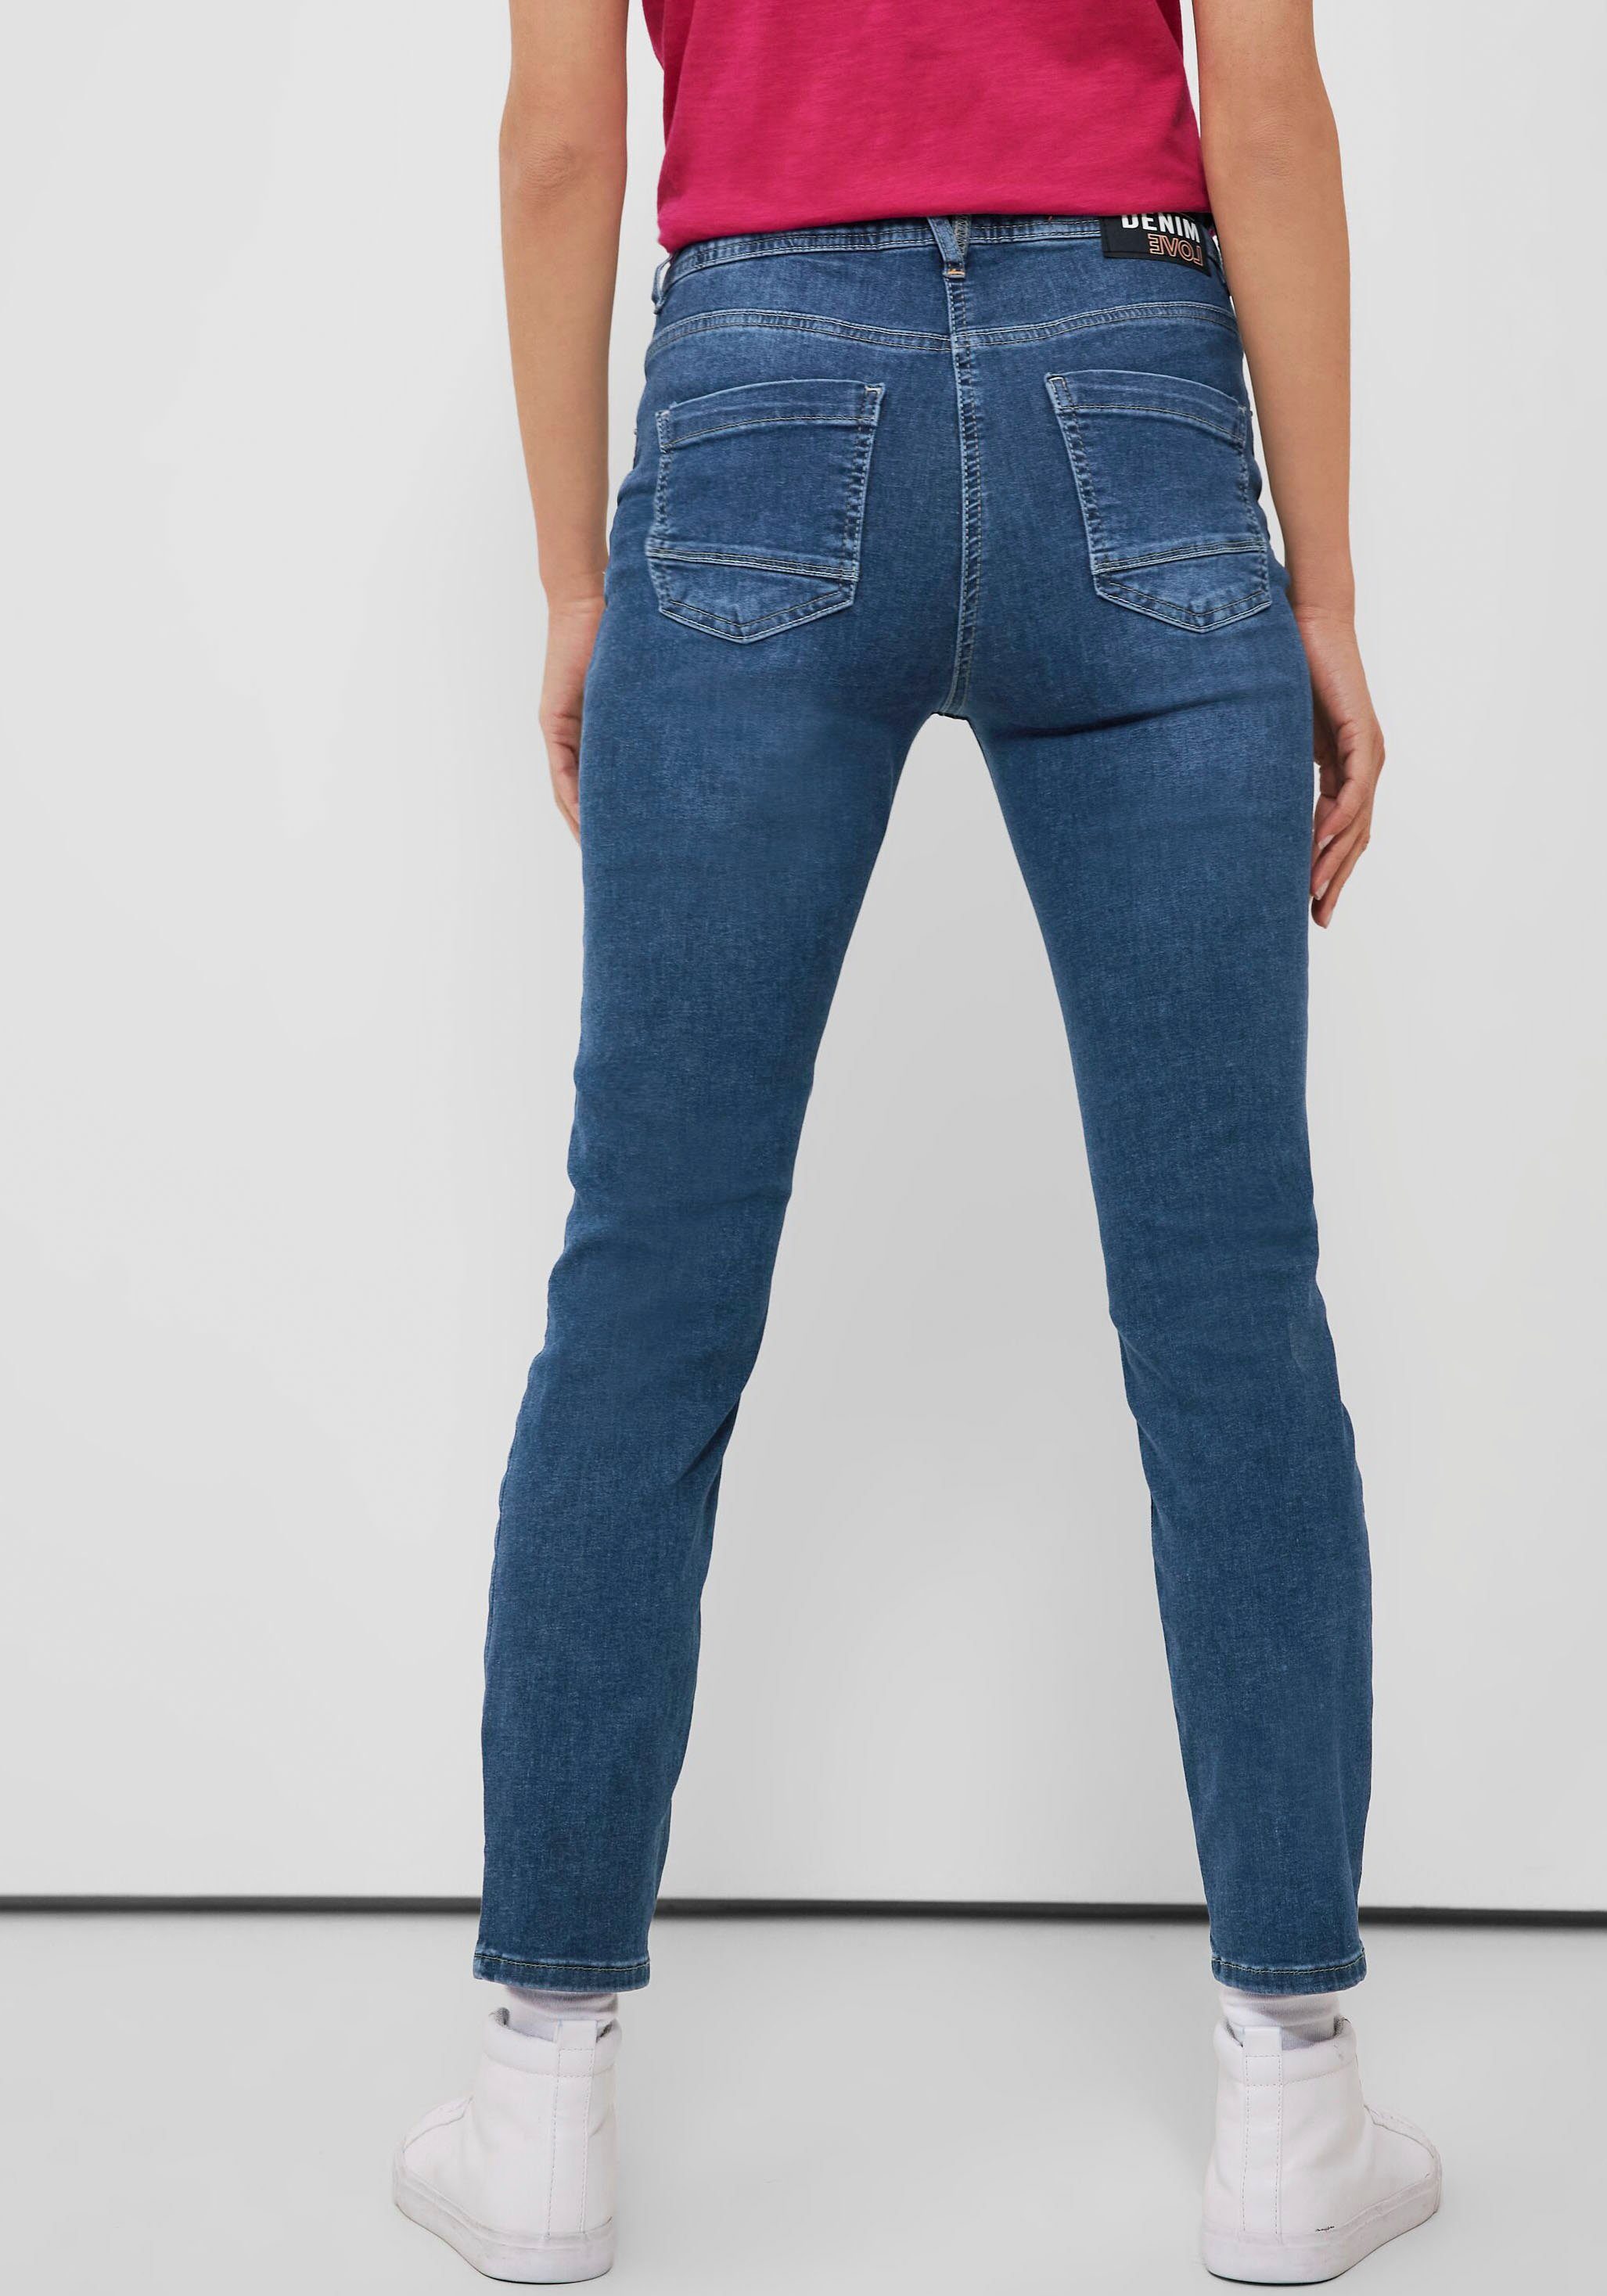 Cecil knöchellanger Toronto in Ausführung Slim-fit-Jeans Style